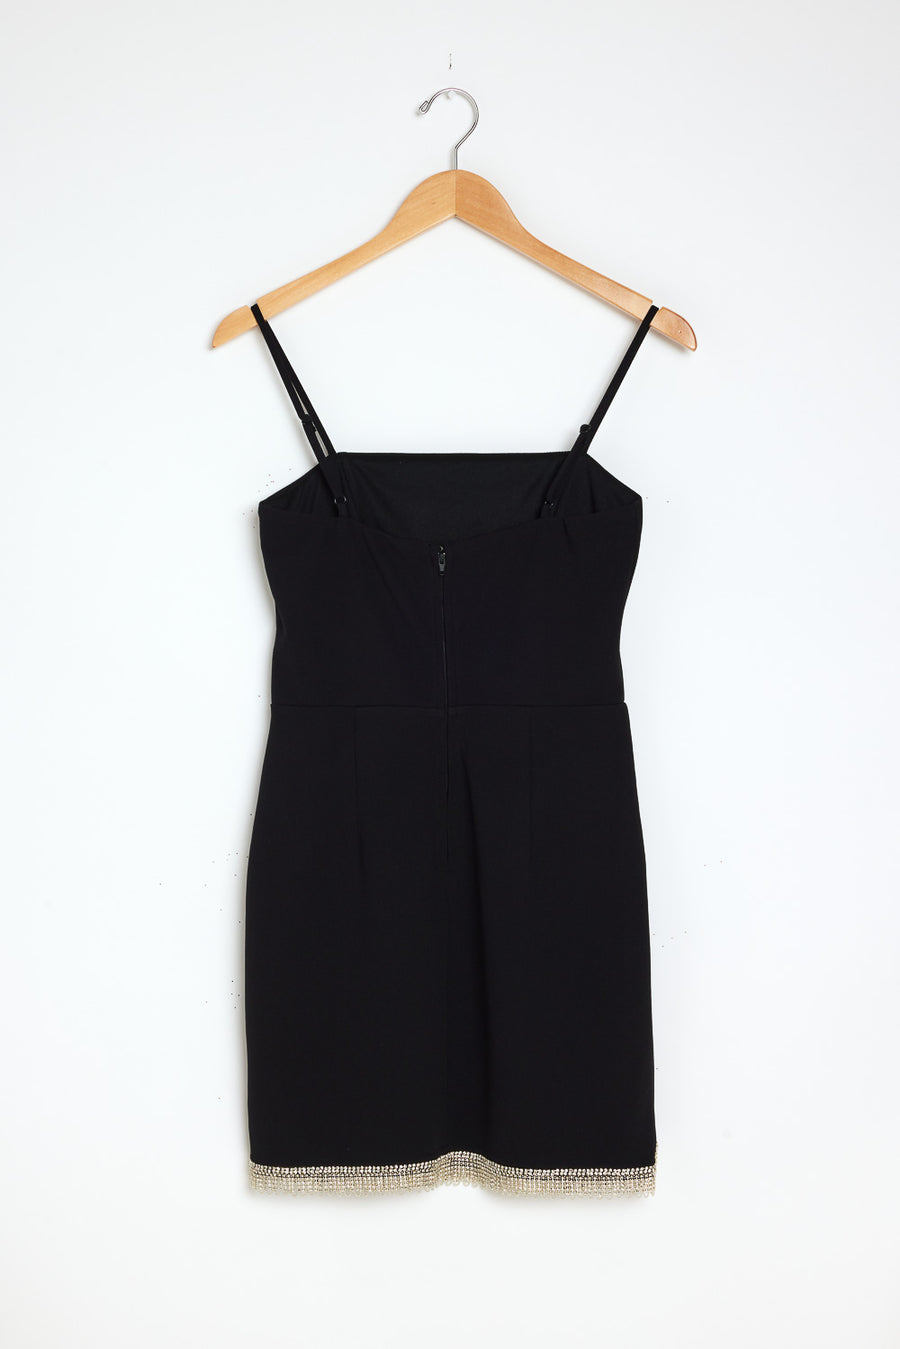 Black Square Neck Fringe Dress - Trixxi Clothing